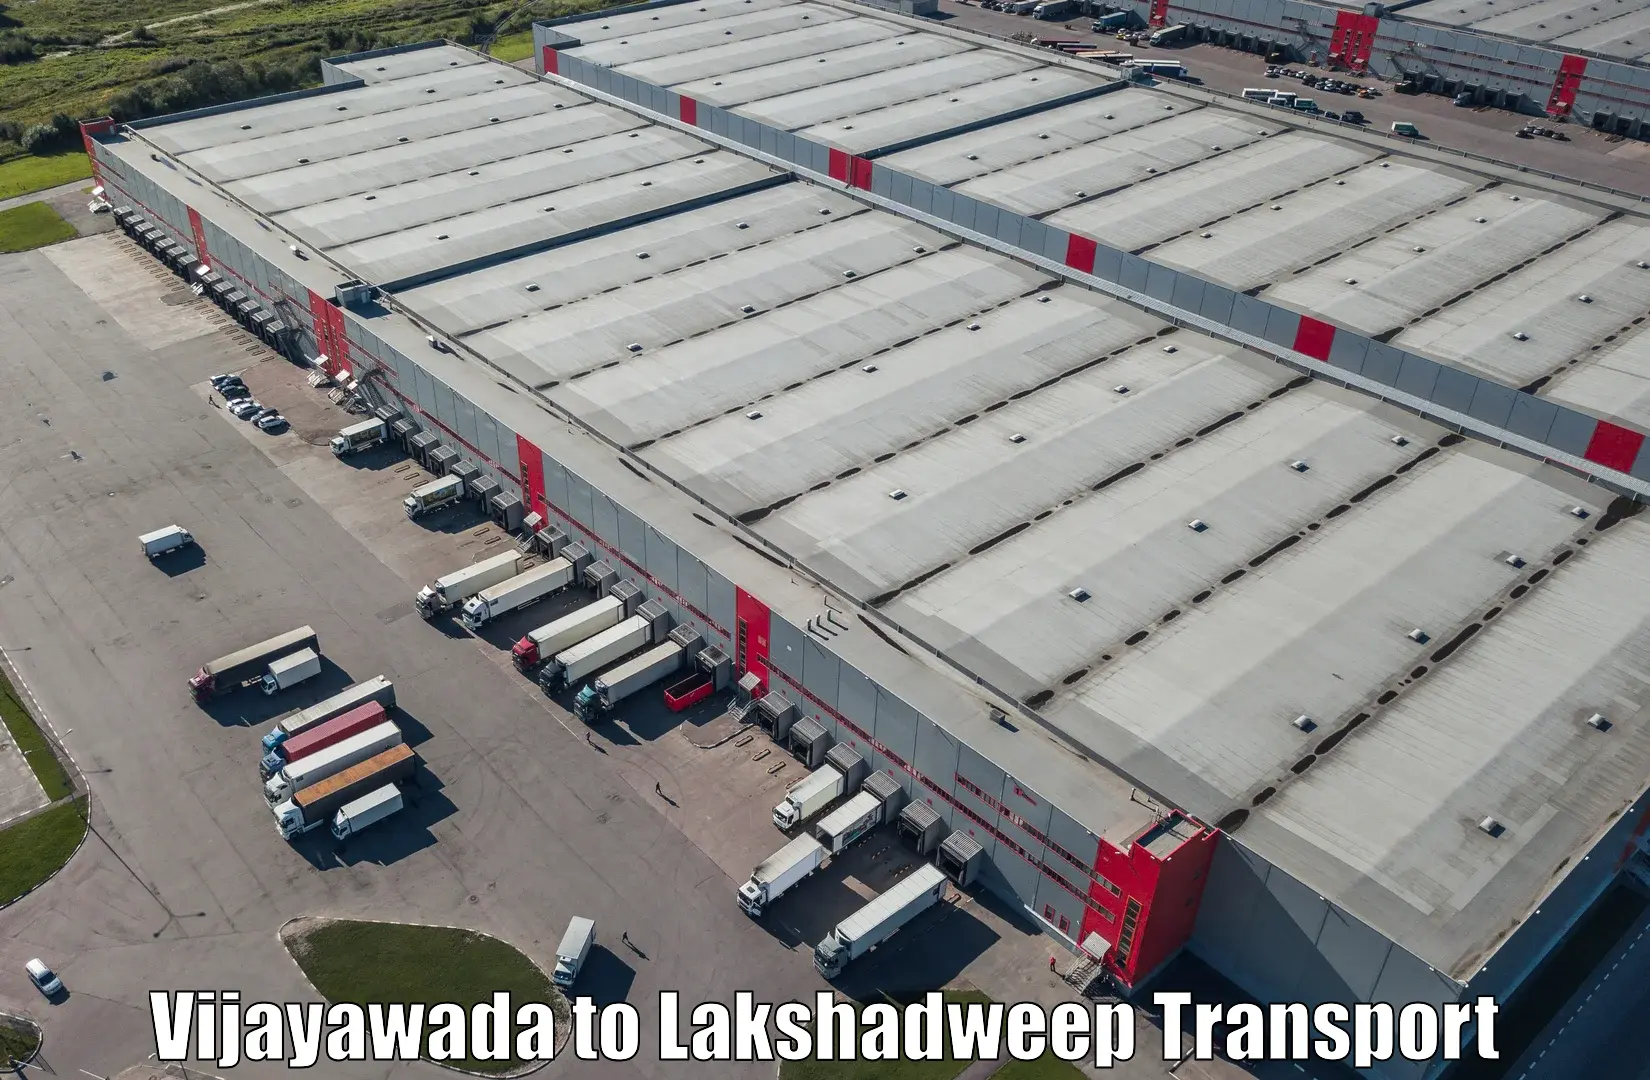 Express transport services Vijayawada to Lakshadweep